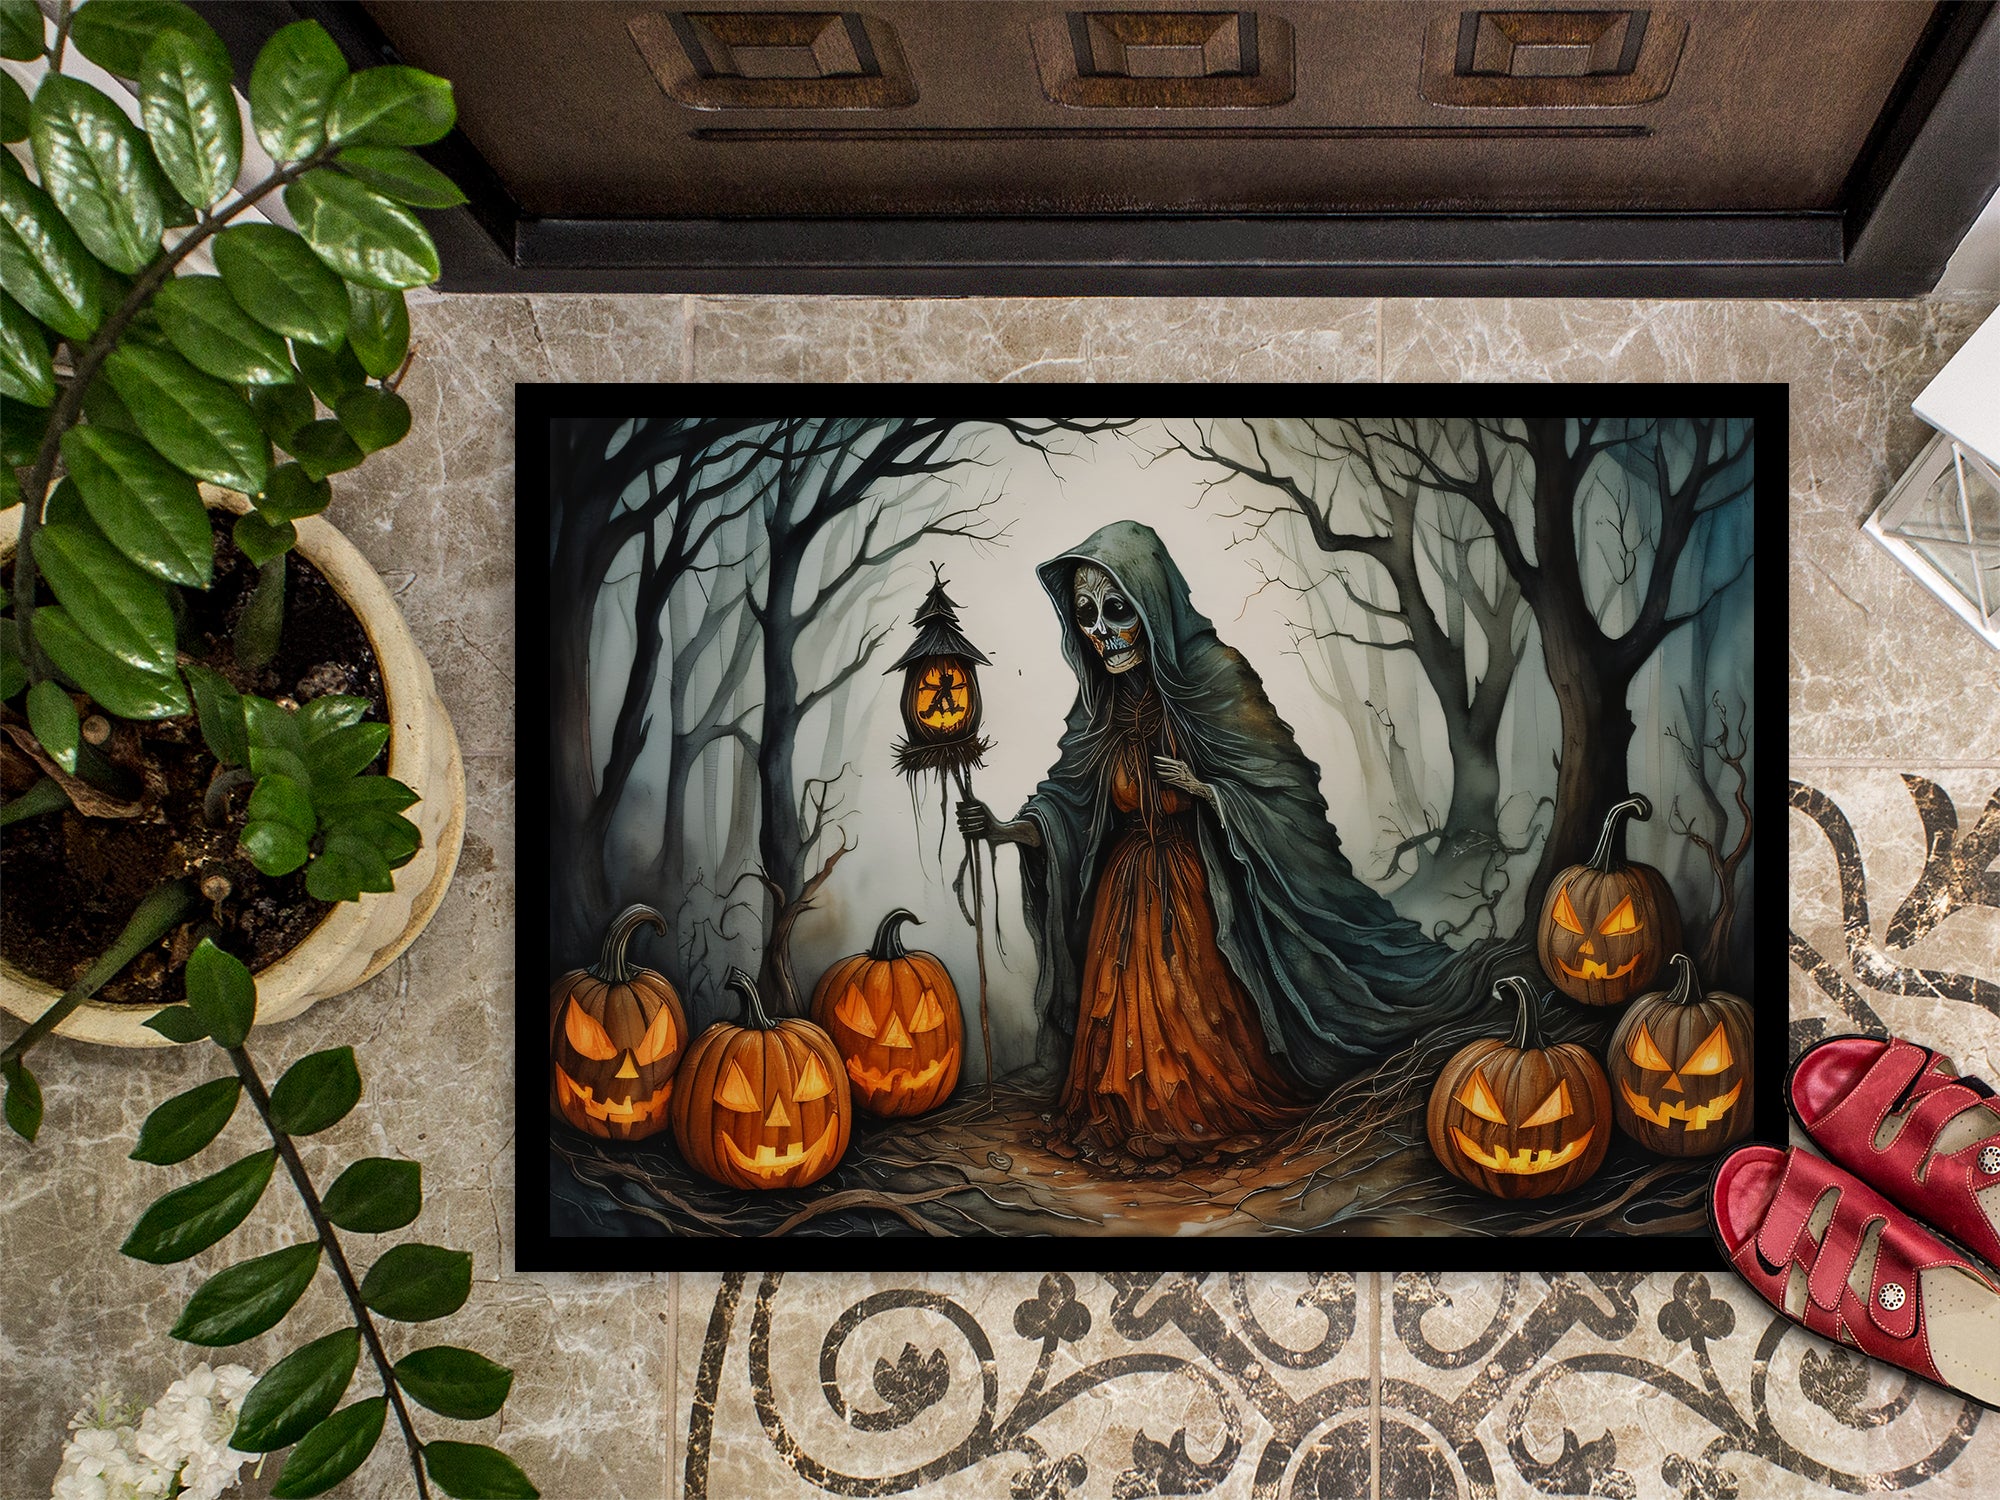 The Weeping Woman Spooky Halloween Doormat 18x27  the-store.com.